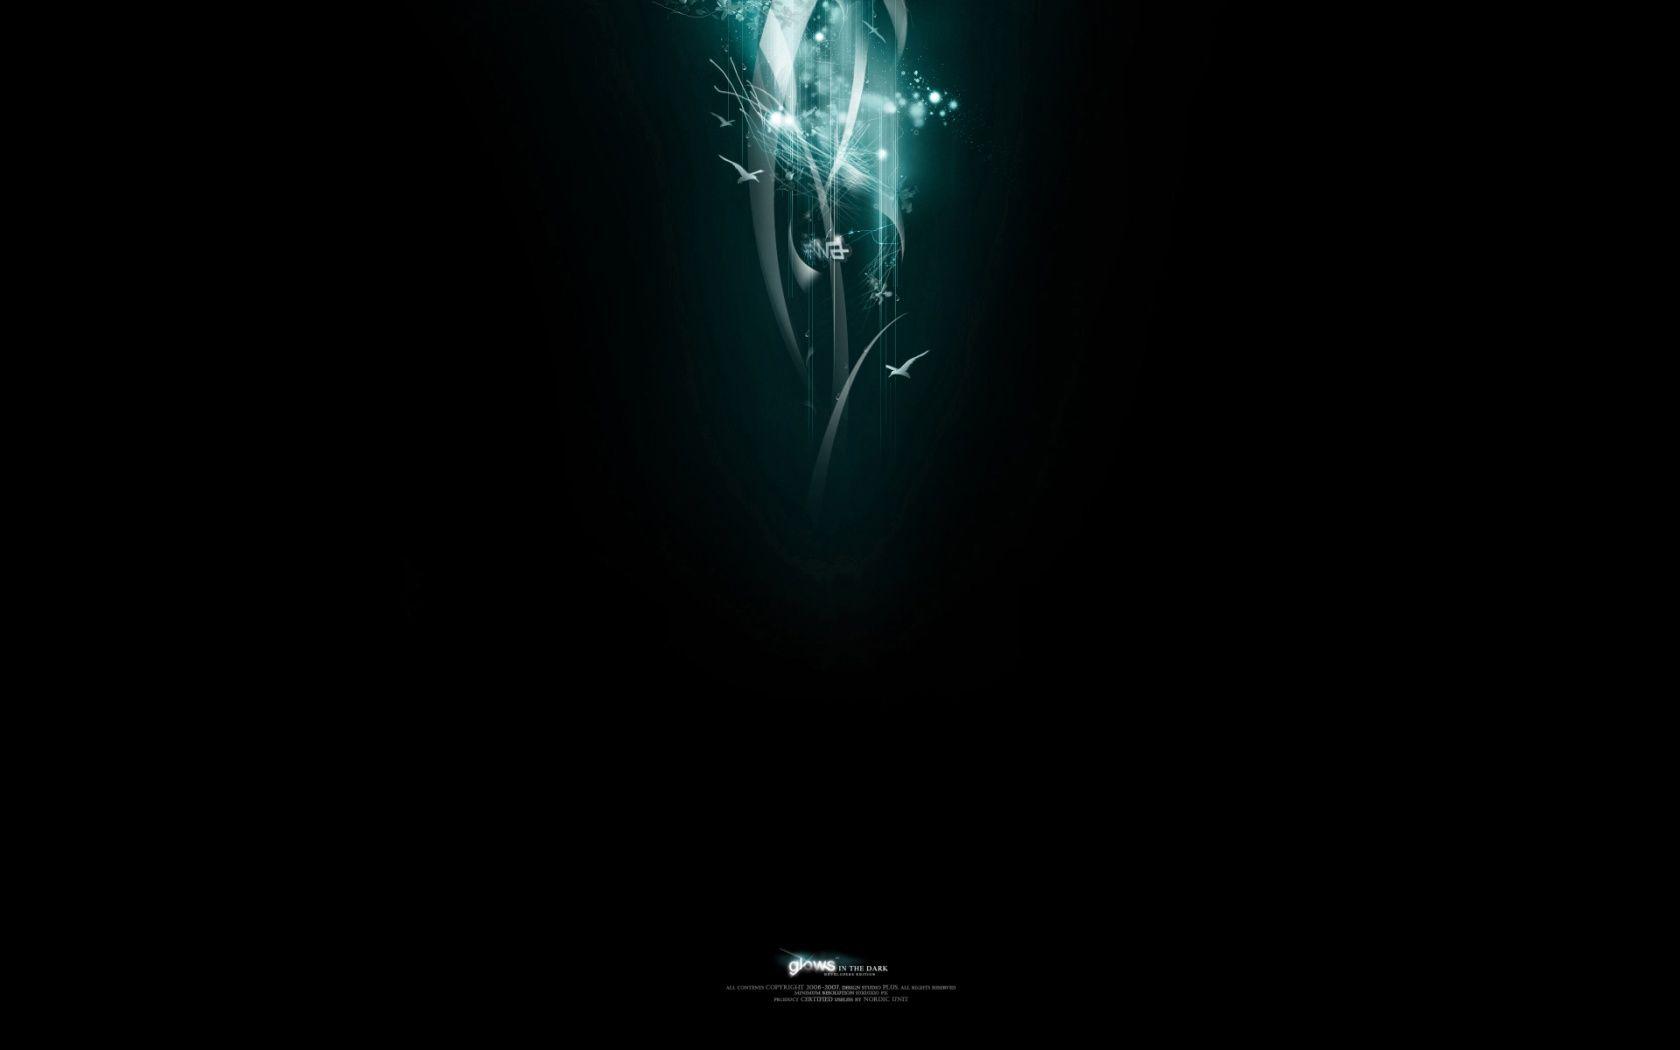 Desktop Image: Glow In The Dark Wallpaper, Glow In The Dark